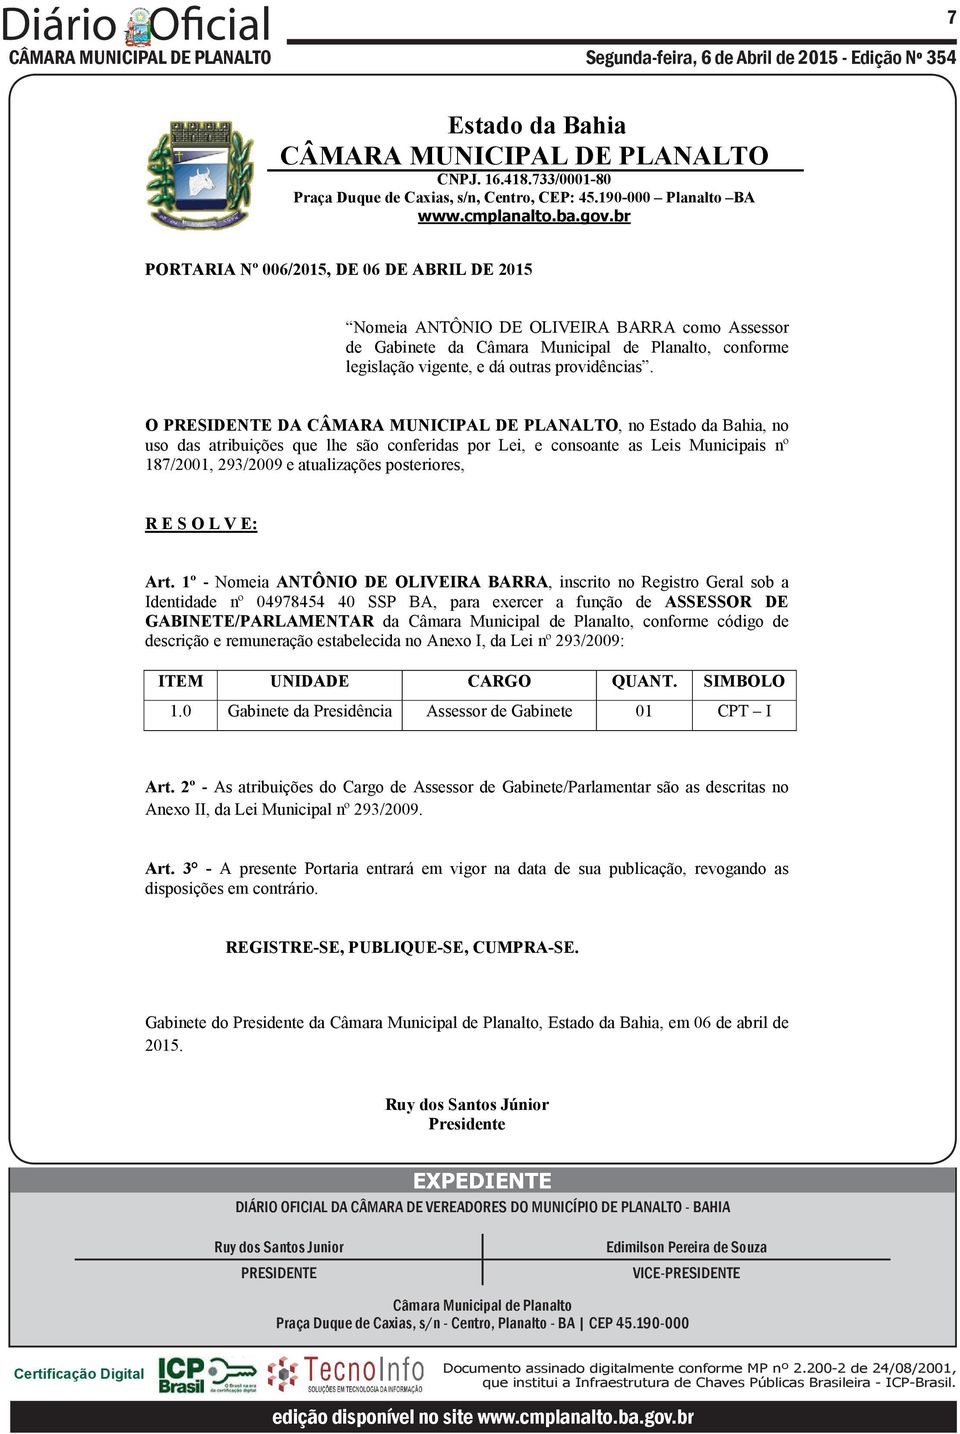 1º - Nomeia ANTÔNIO DE OLIVEIRA BARRA, inscrito no Registro Geral sob a Identidade nº 04978454 40 SSP BA, para exercer a função de ASSESSOR DE GABINETE/PARLAMENTAR da Câmara Municipal de Planalto,